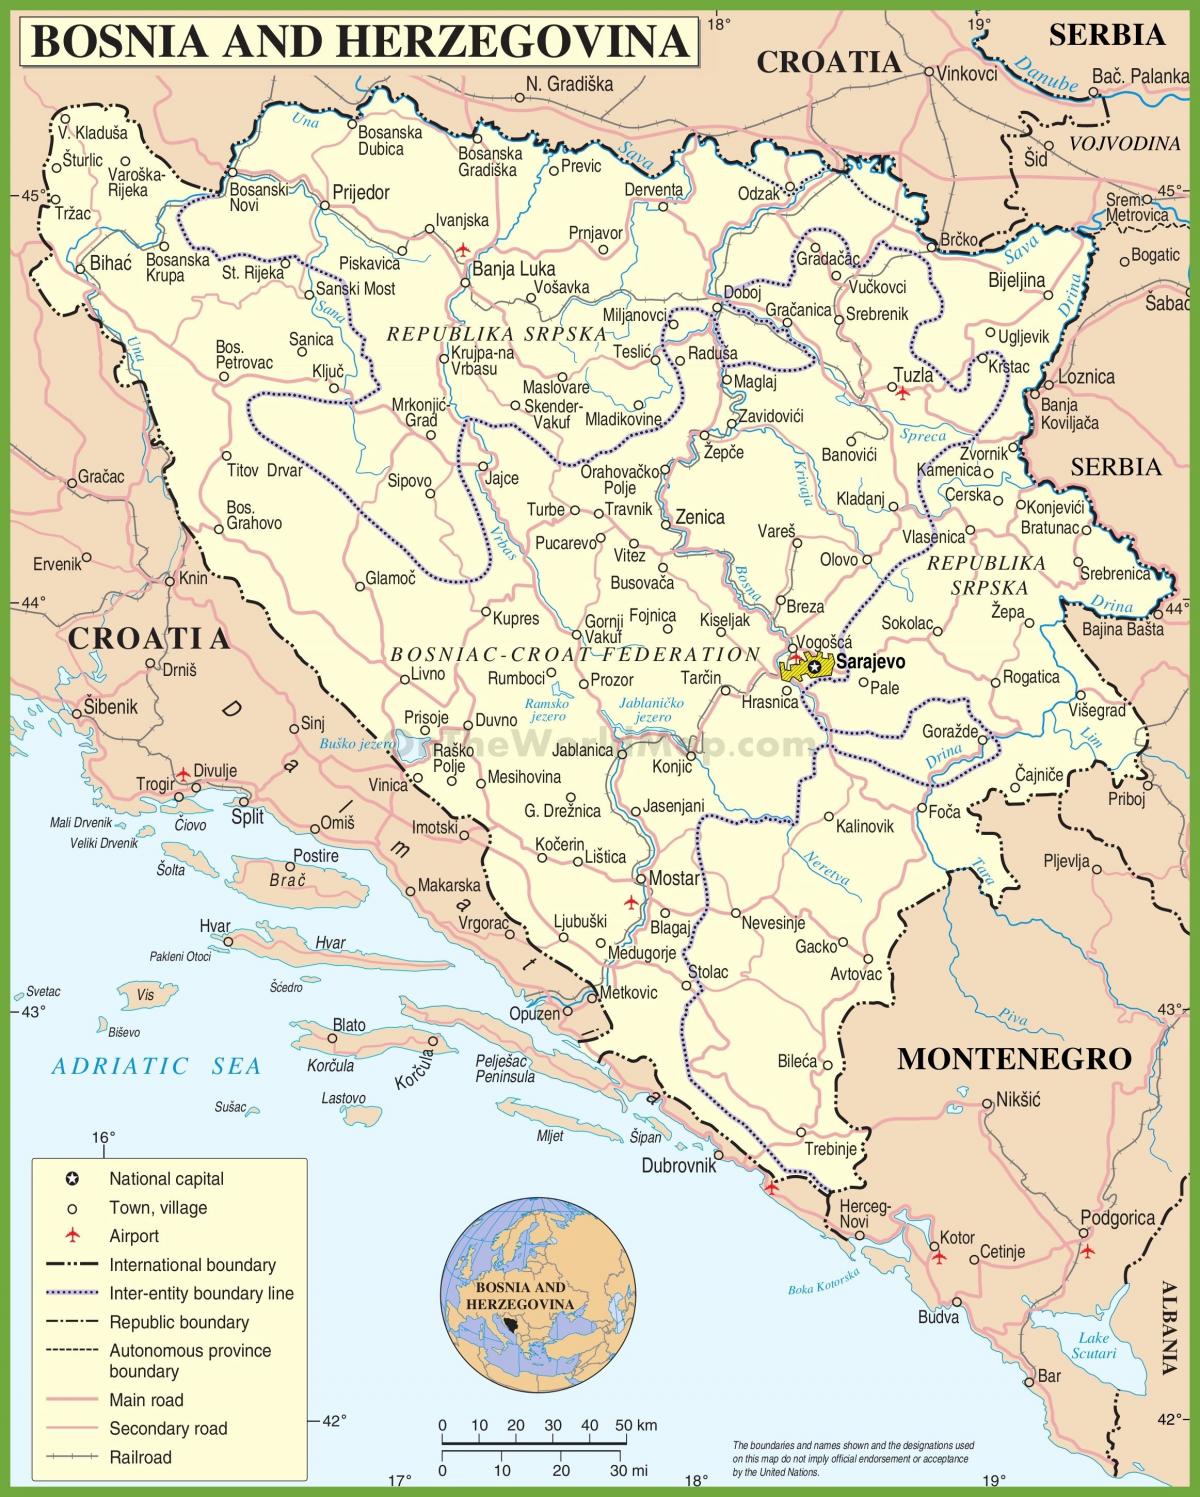 Bosna yol haritası 